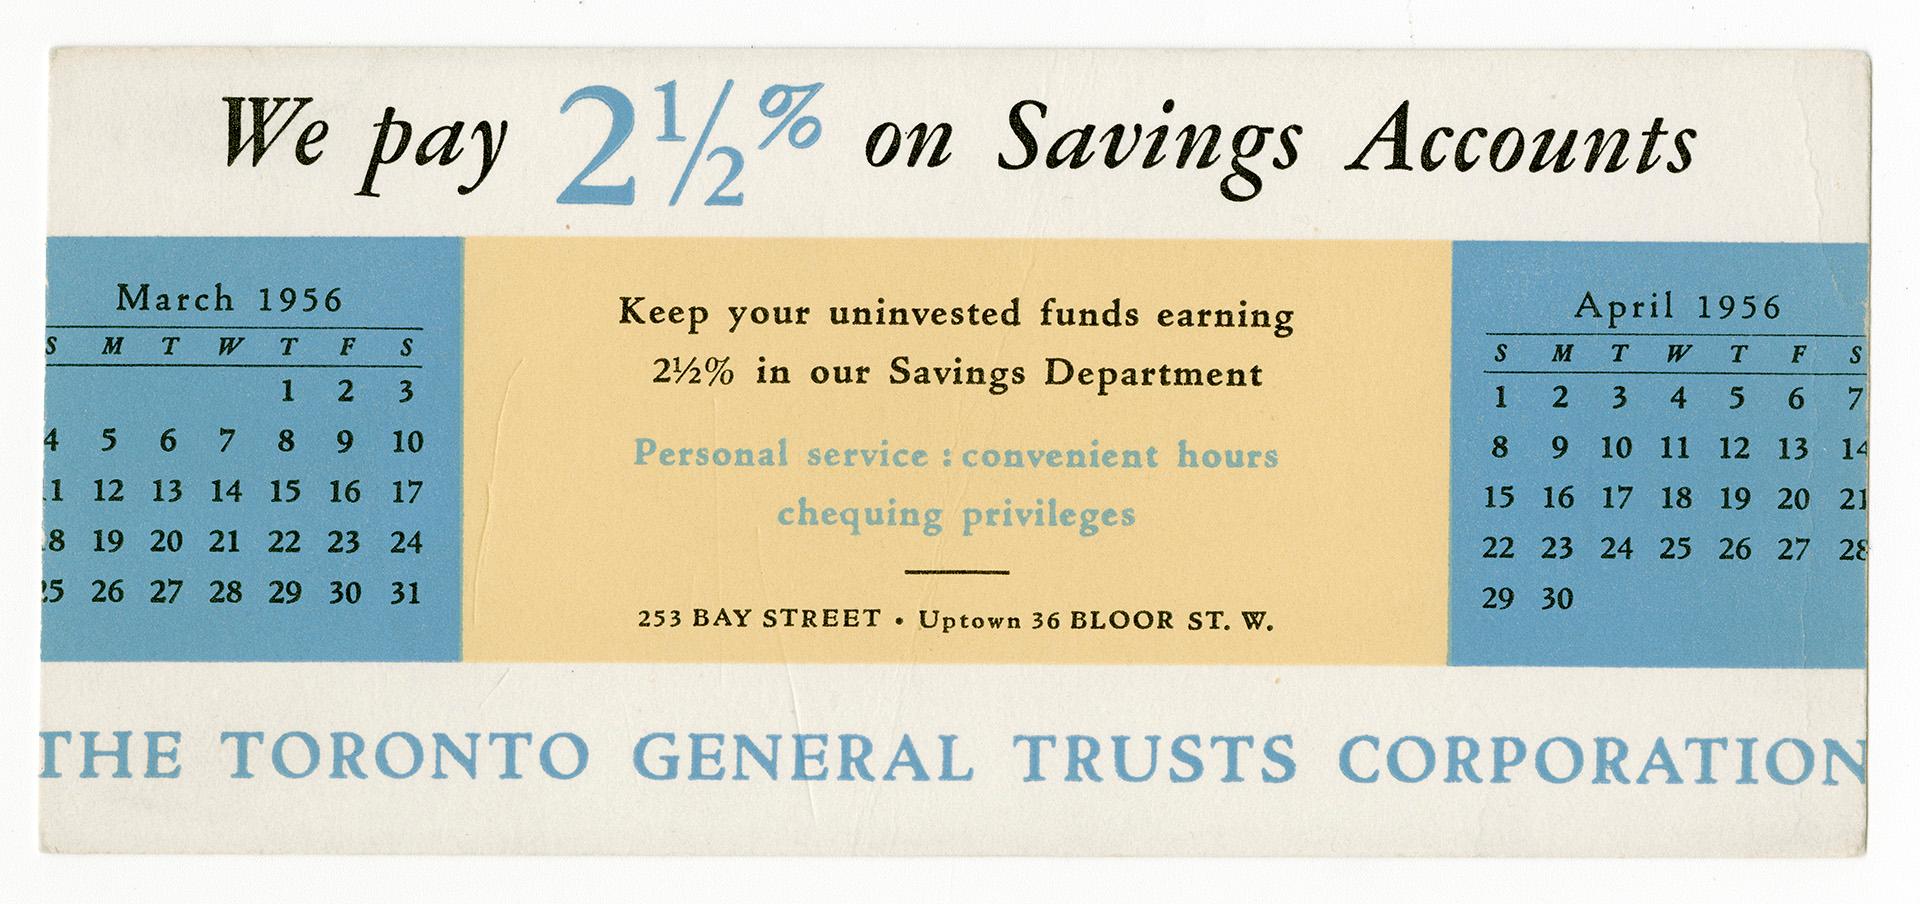 We pay 2 1/2% on savings accounts